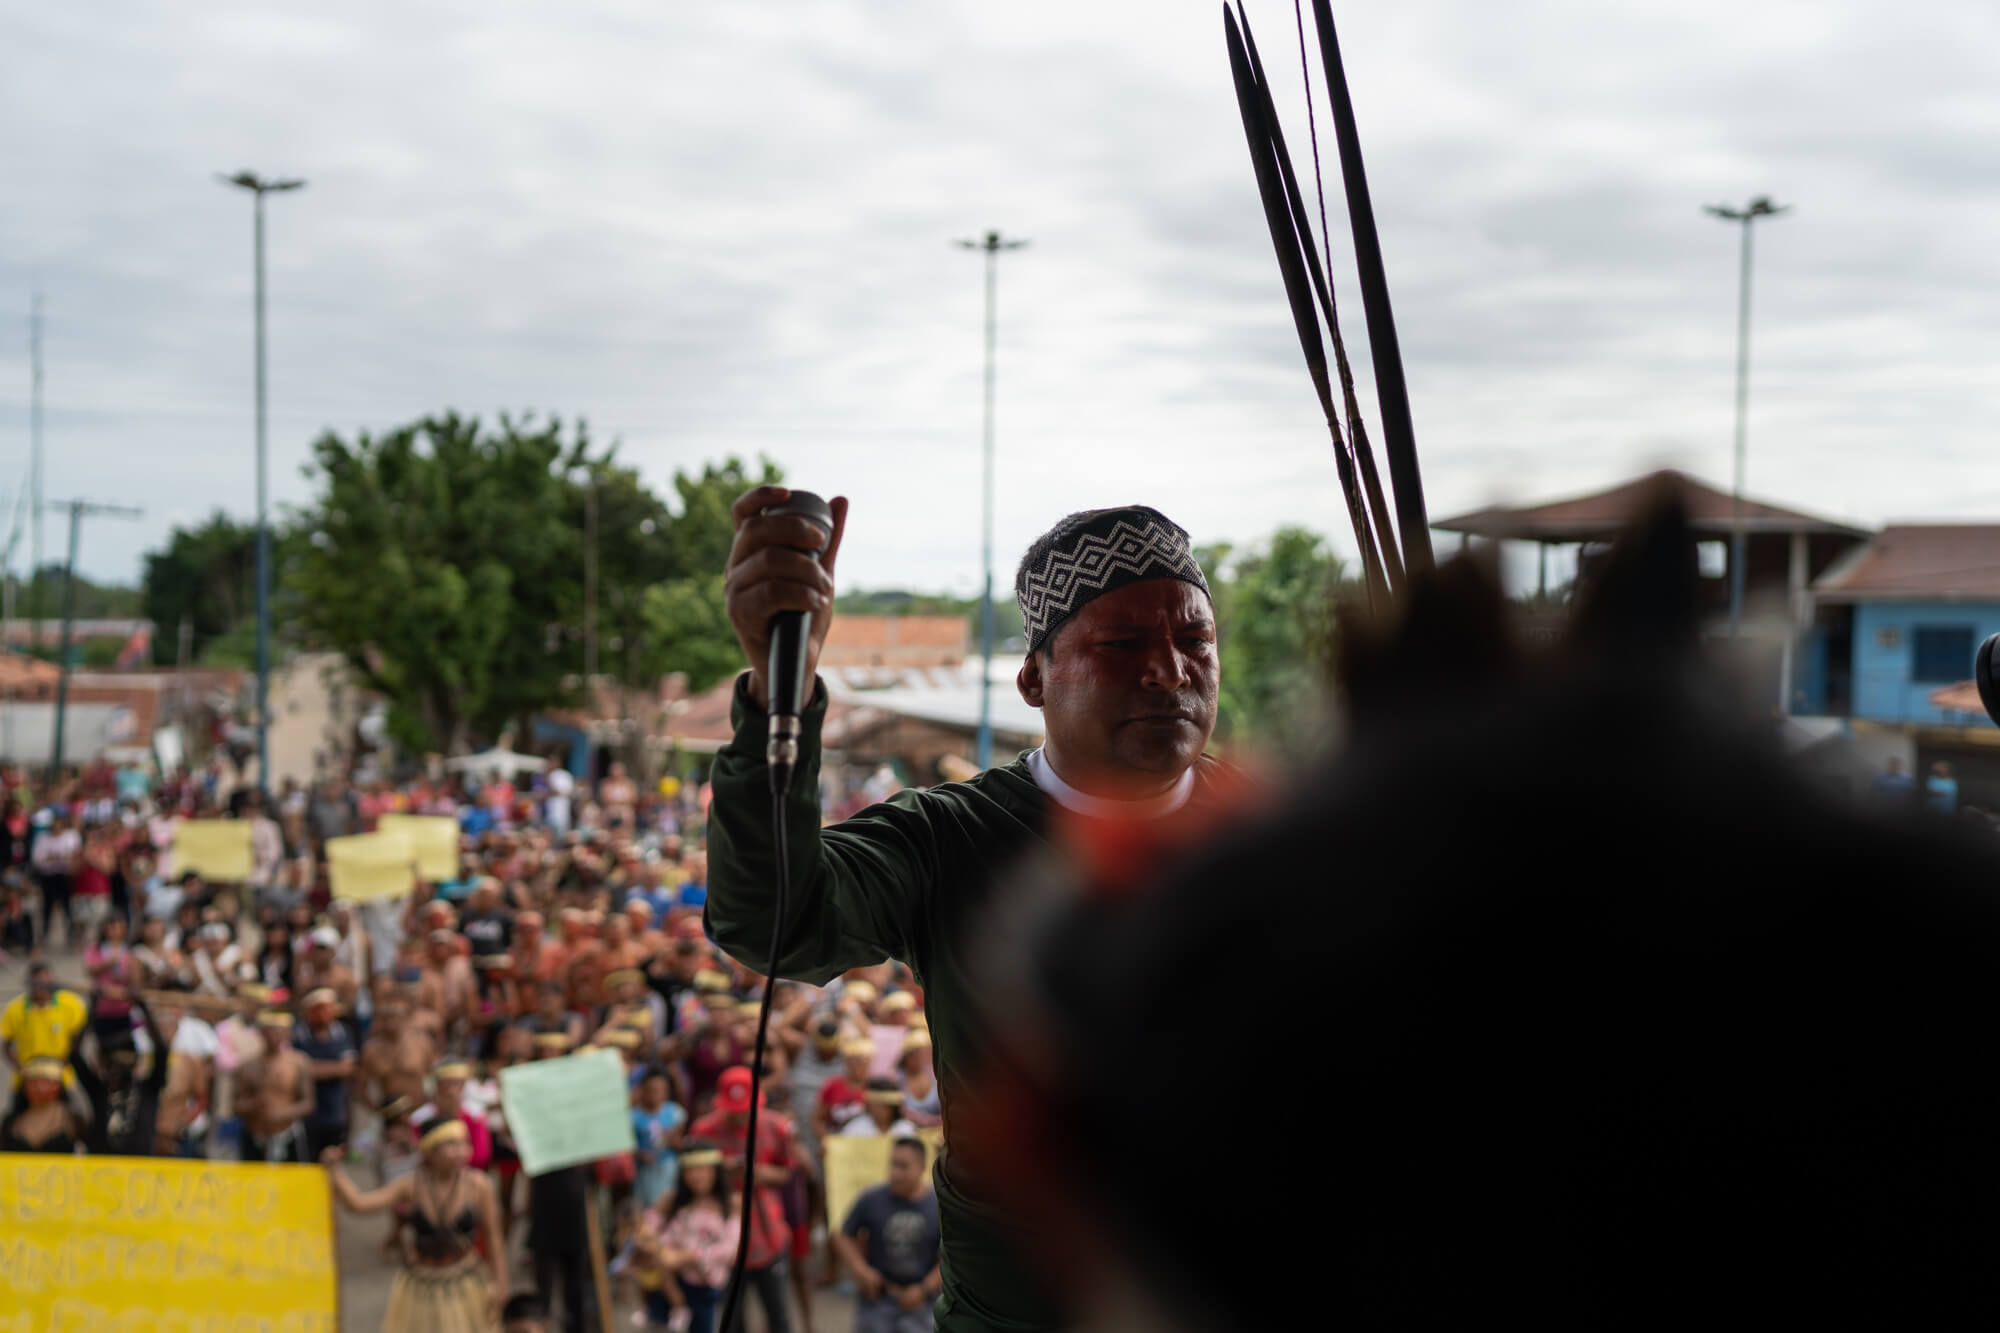 Líder indígena da União dos Povos Indígenas do Vale do Javari, discursando no microfone durante manifestação